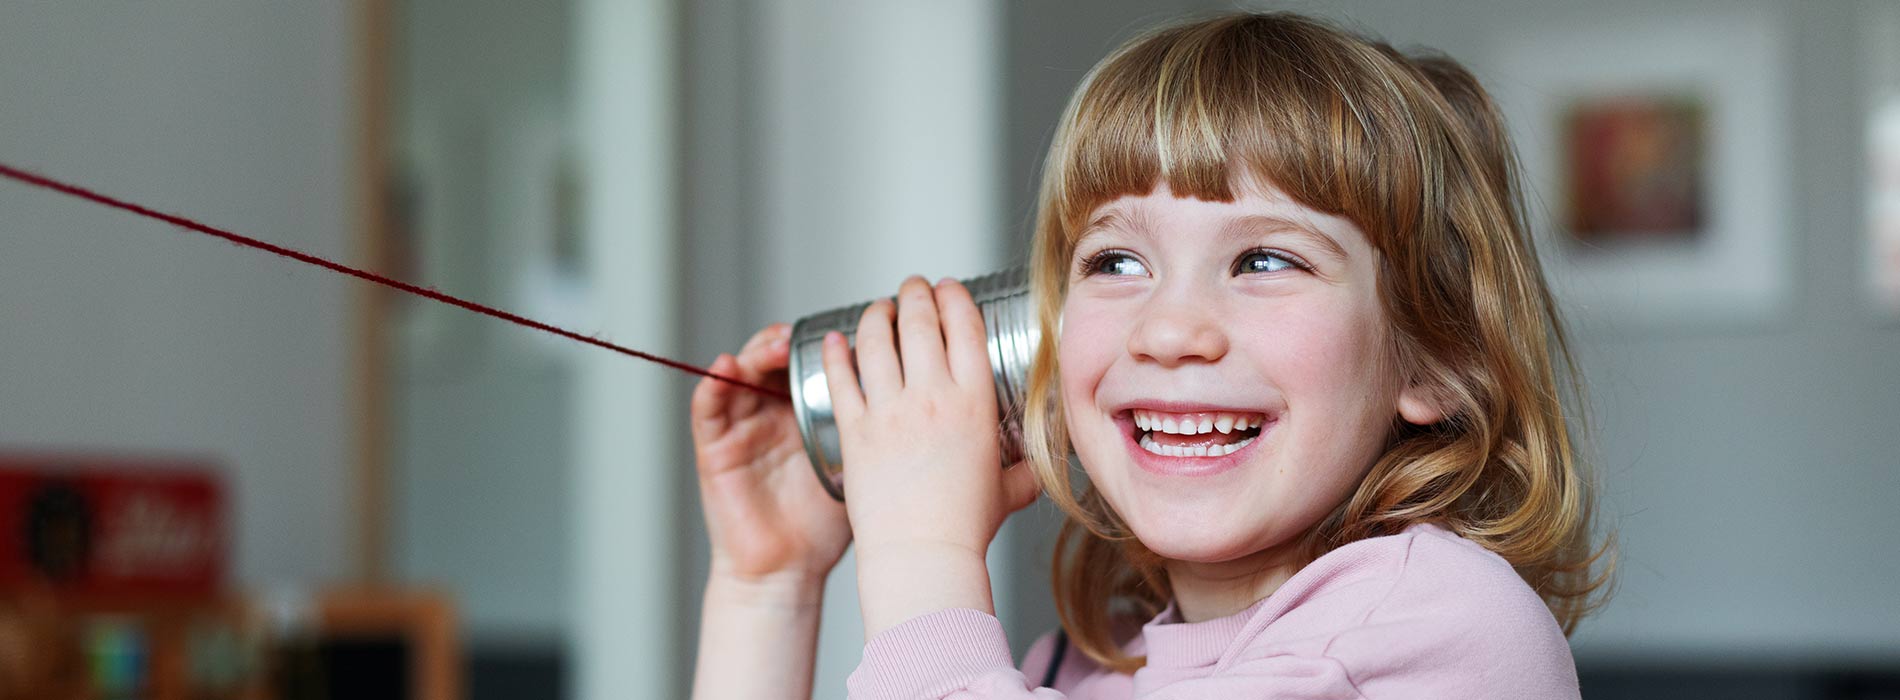 Foto: ein kleines lachendes Mädchen hält eine Dose aus Blech an ihr Ohr und spielt Telefonieren